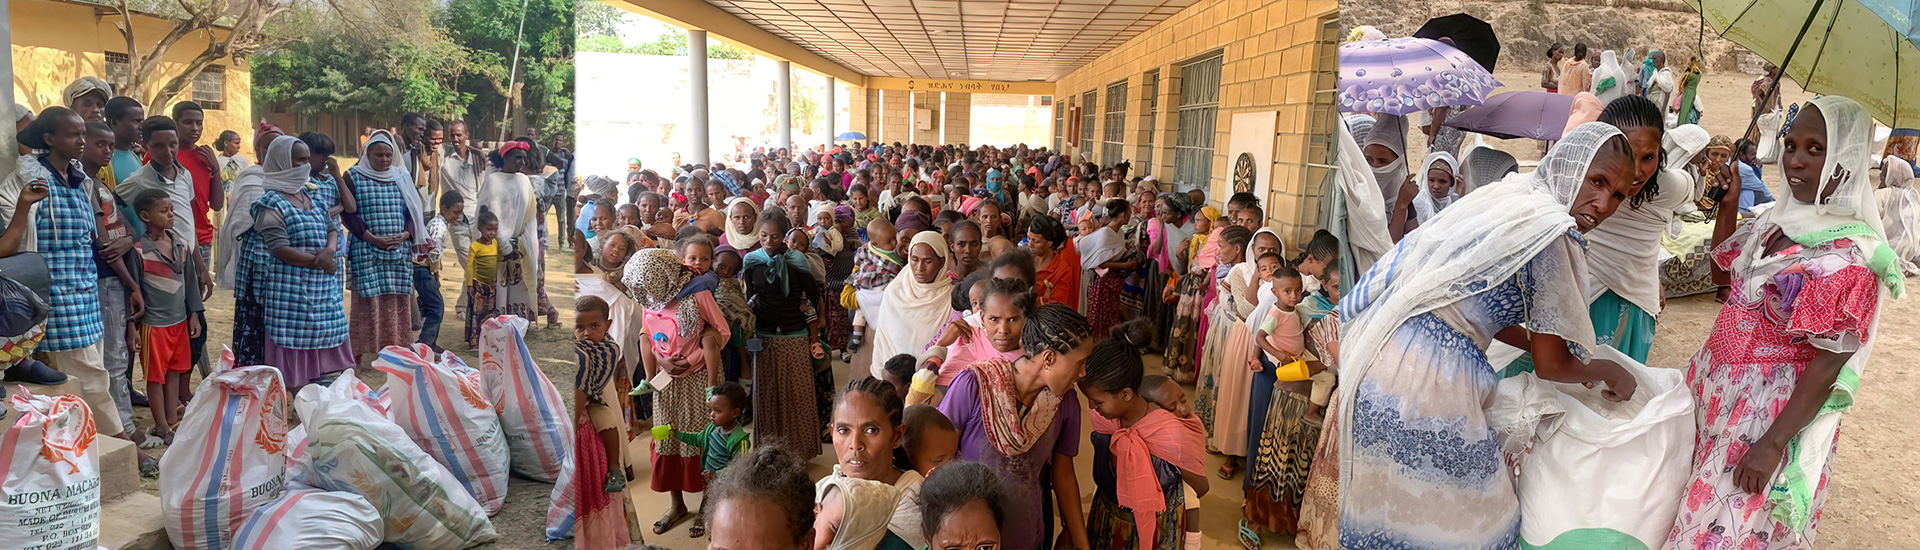 Dos años de guerra en Etiopía: una catástrofe humanitaria incontrolable en la bloqueada región de Tigray